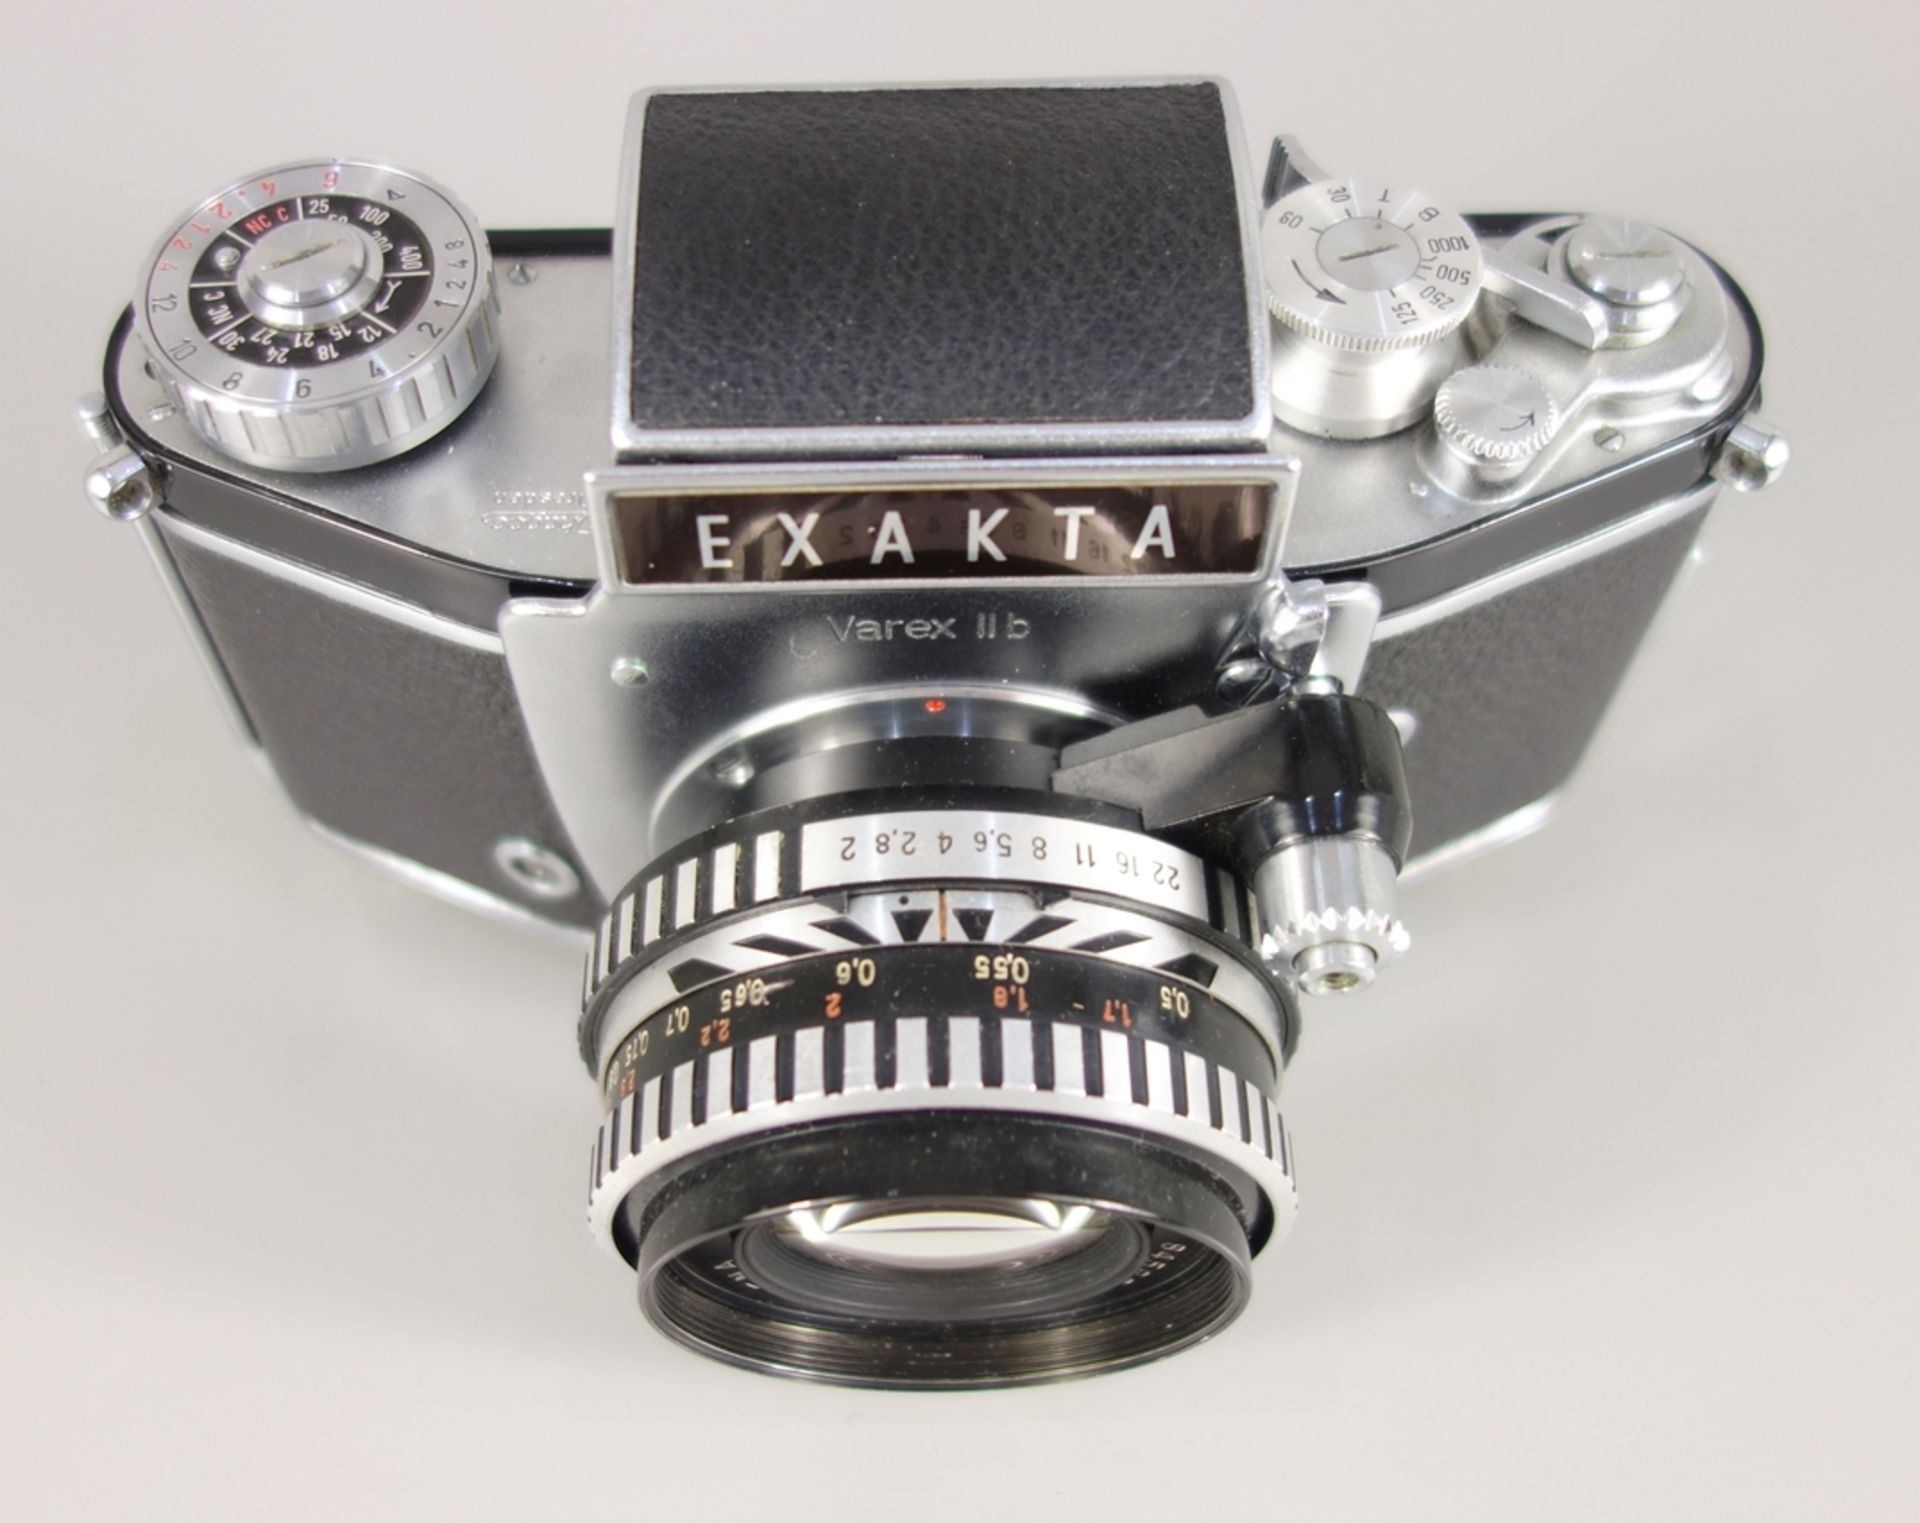 Exakta Varex IIb, Ihagee Dresden, 1963-1967, Kleinbildspiegelreflexkamera, Serien-Nr. 1113304, mit - Bild 2 aus 5